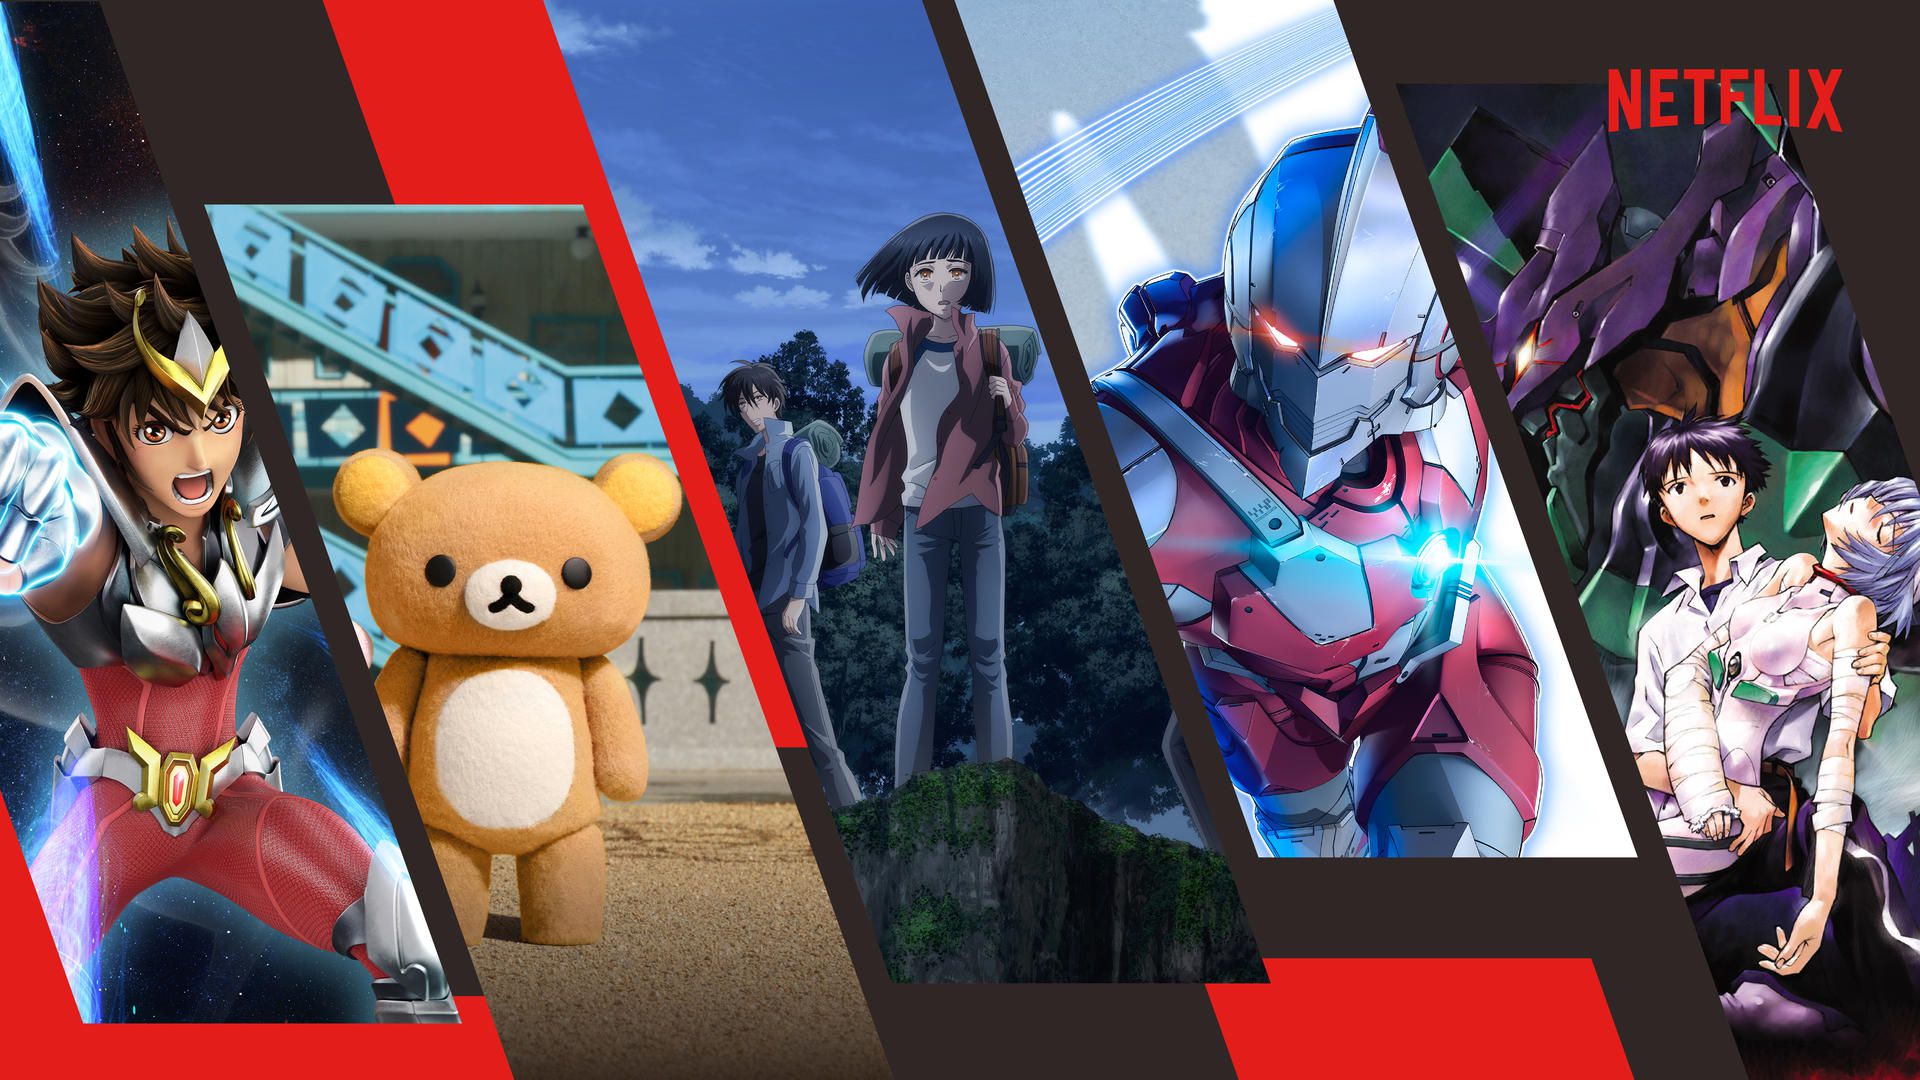 Calendário de Animes: confira as principais estreias programadas para 2019